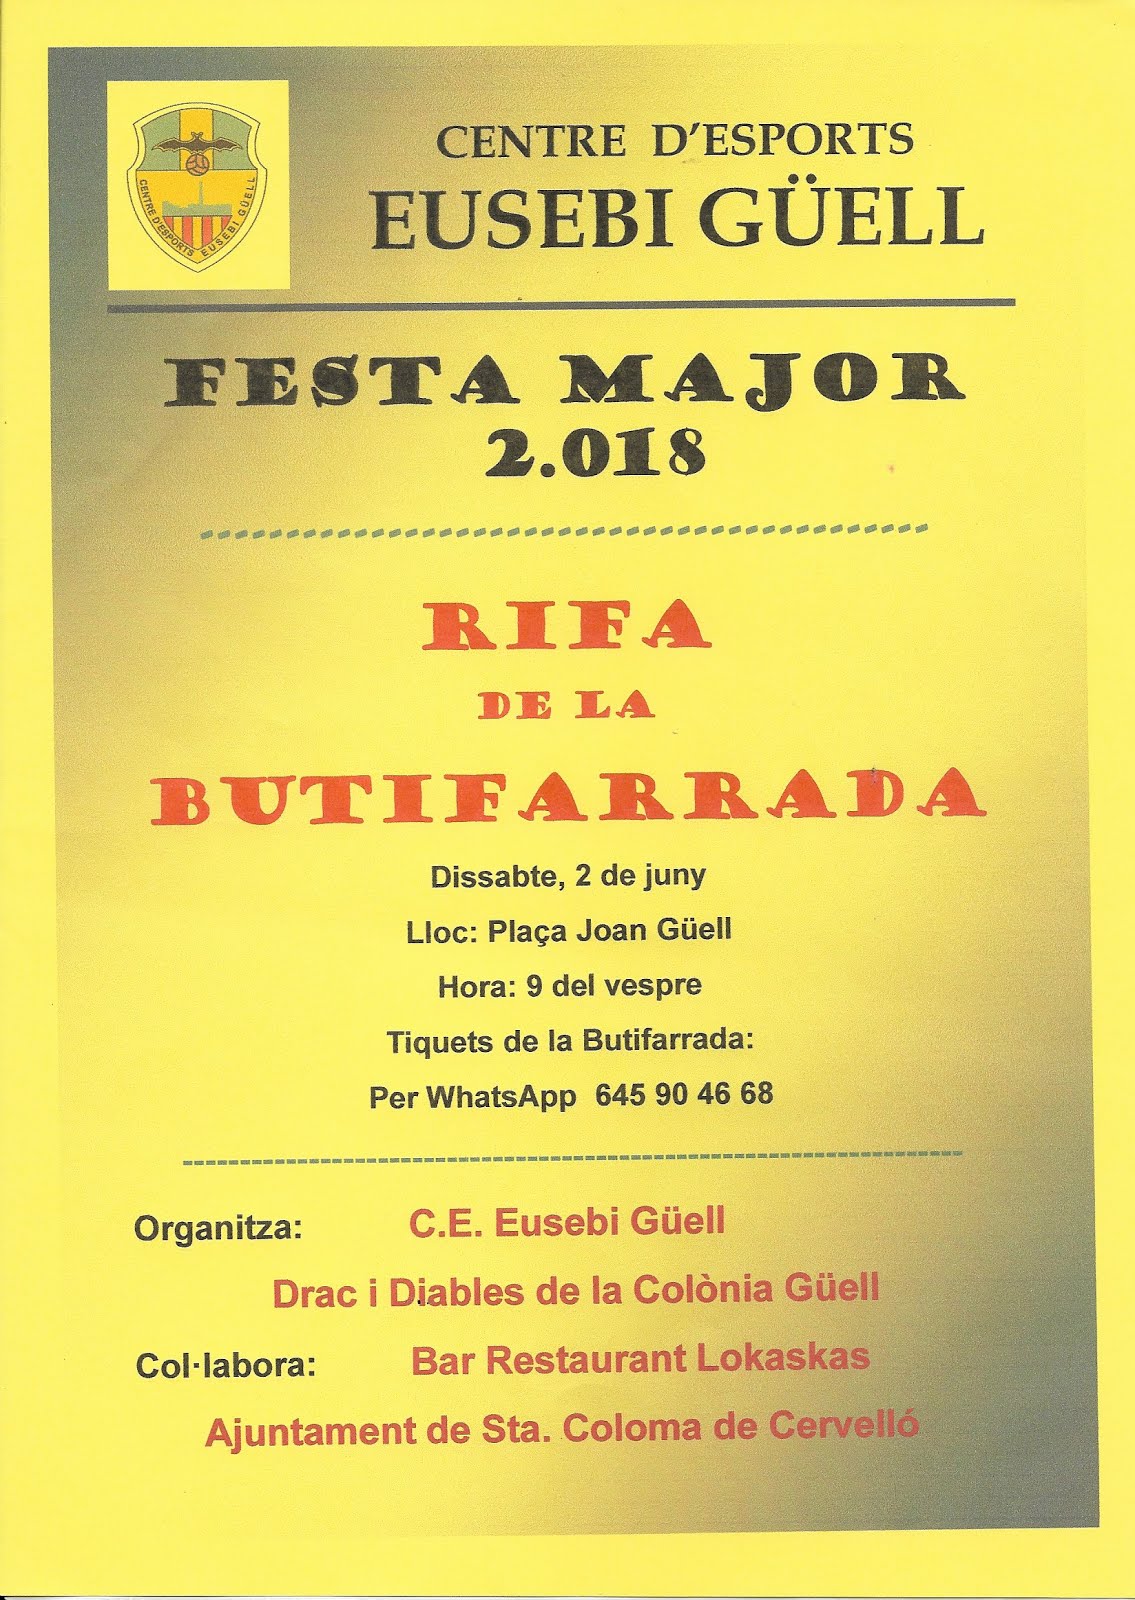 FESTA MAJOR 2018 - RIFA BUTIFARRADA